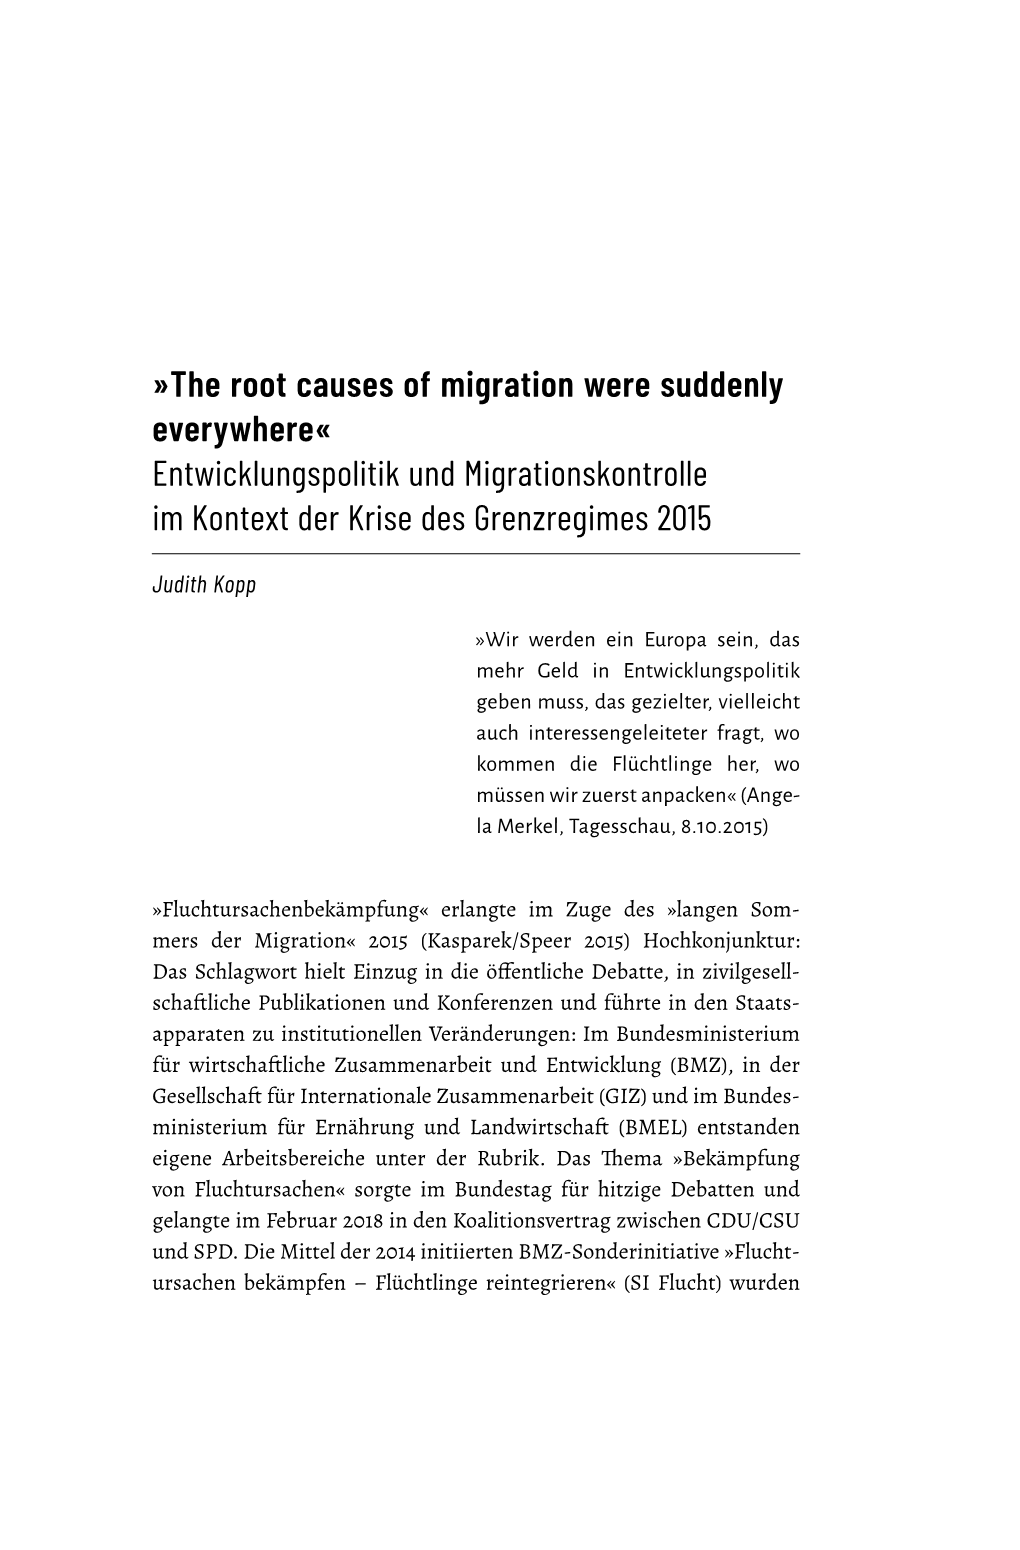 The Root Causes of Migration Were Suddenly Everywhere« Entwicklungspolitik Und Migrationskontrolle Im Kontext Der Krise Des Grenzregimes 2015